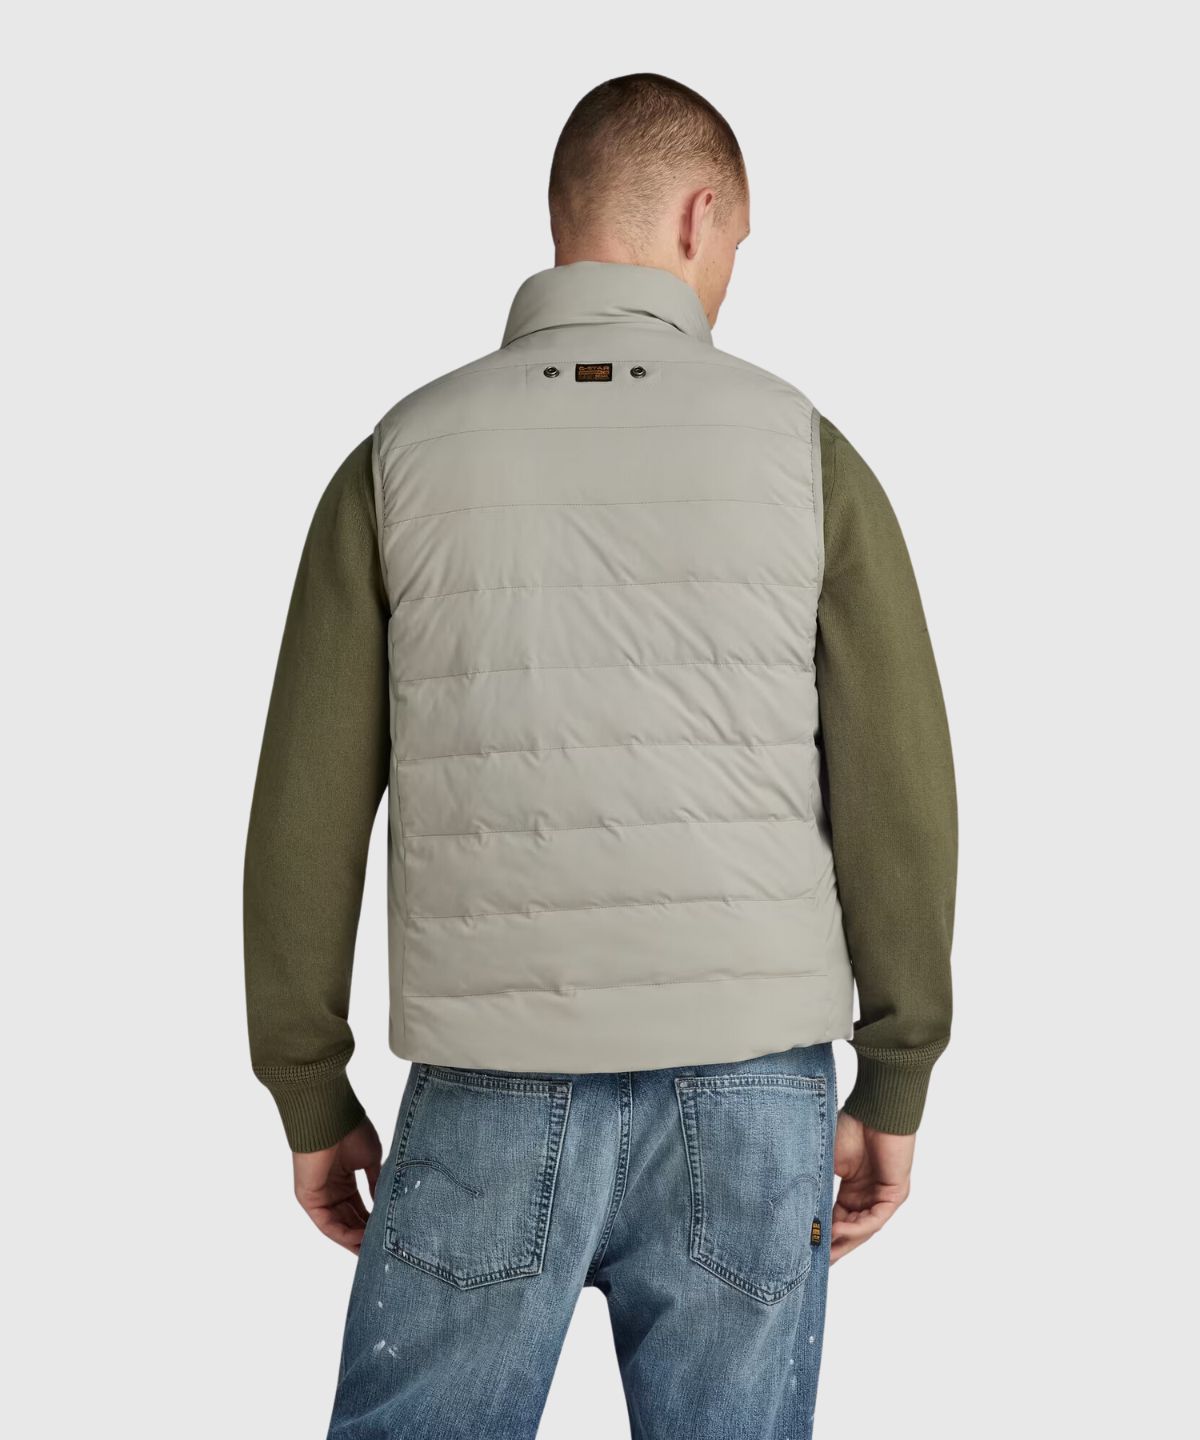 Foundation liner vest